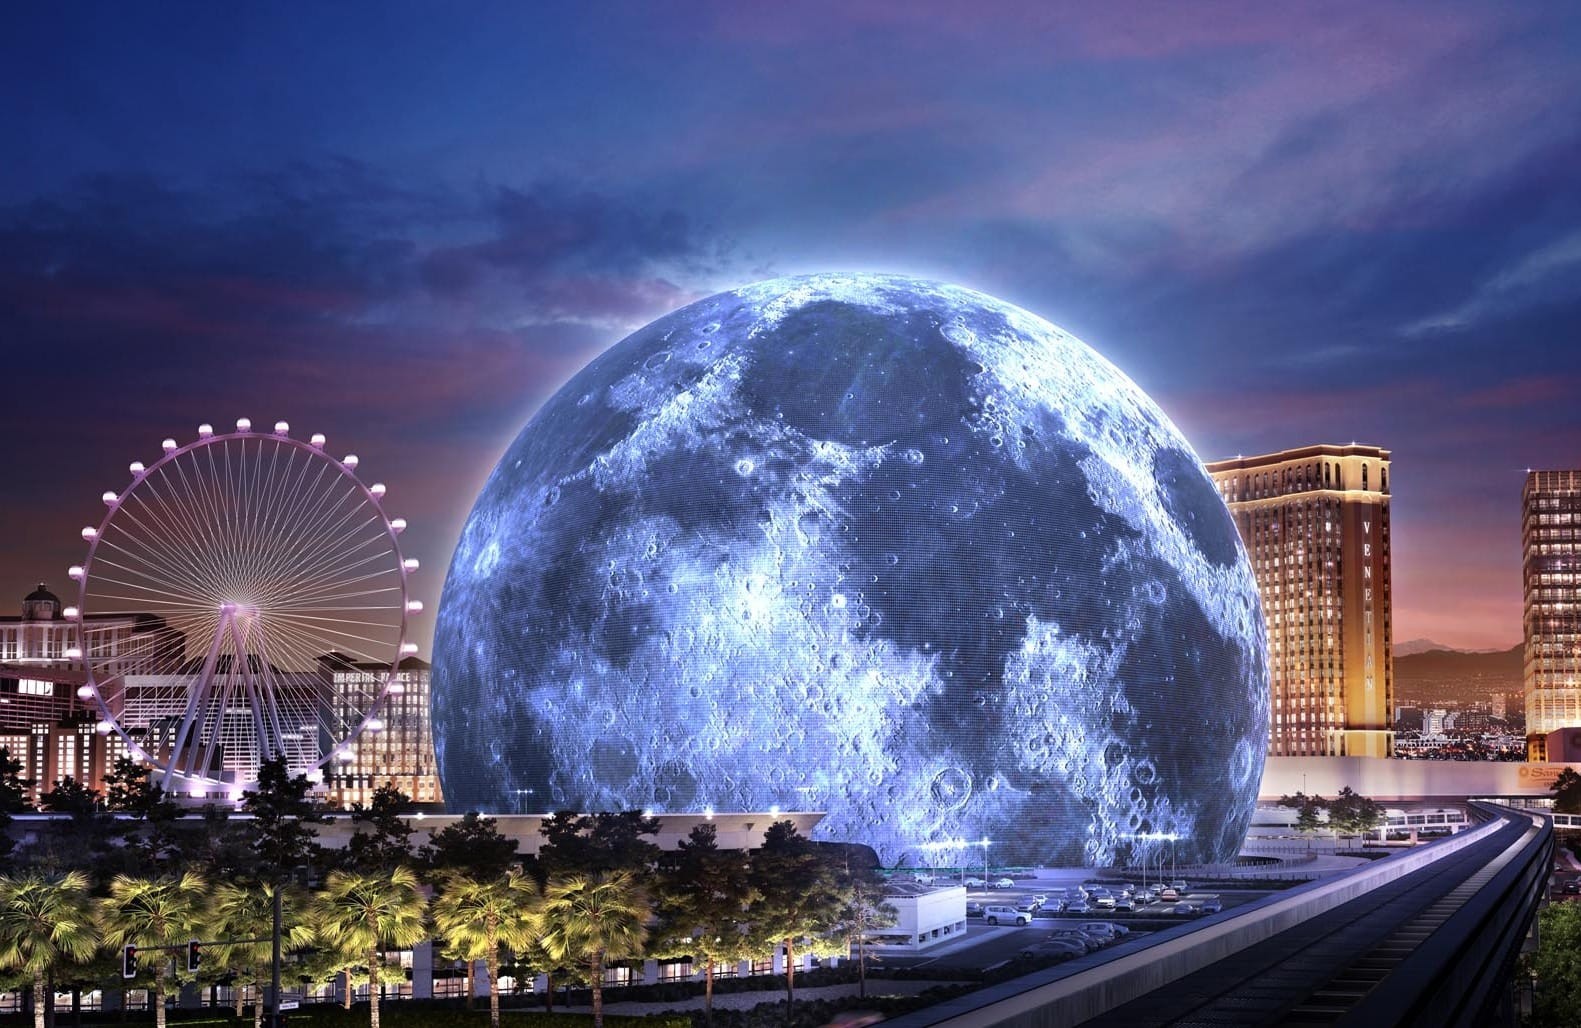 Architecture of Las Vegas Sphere